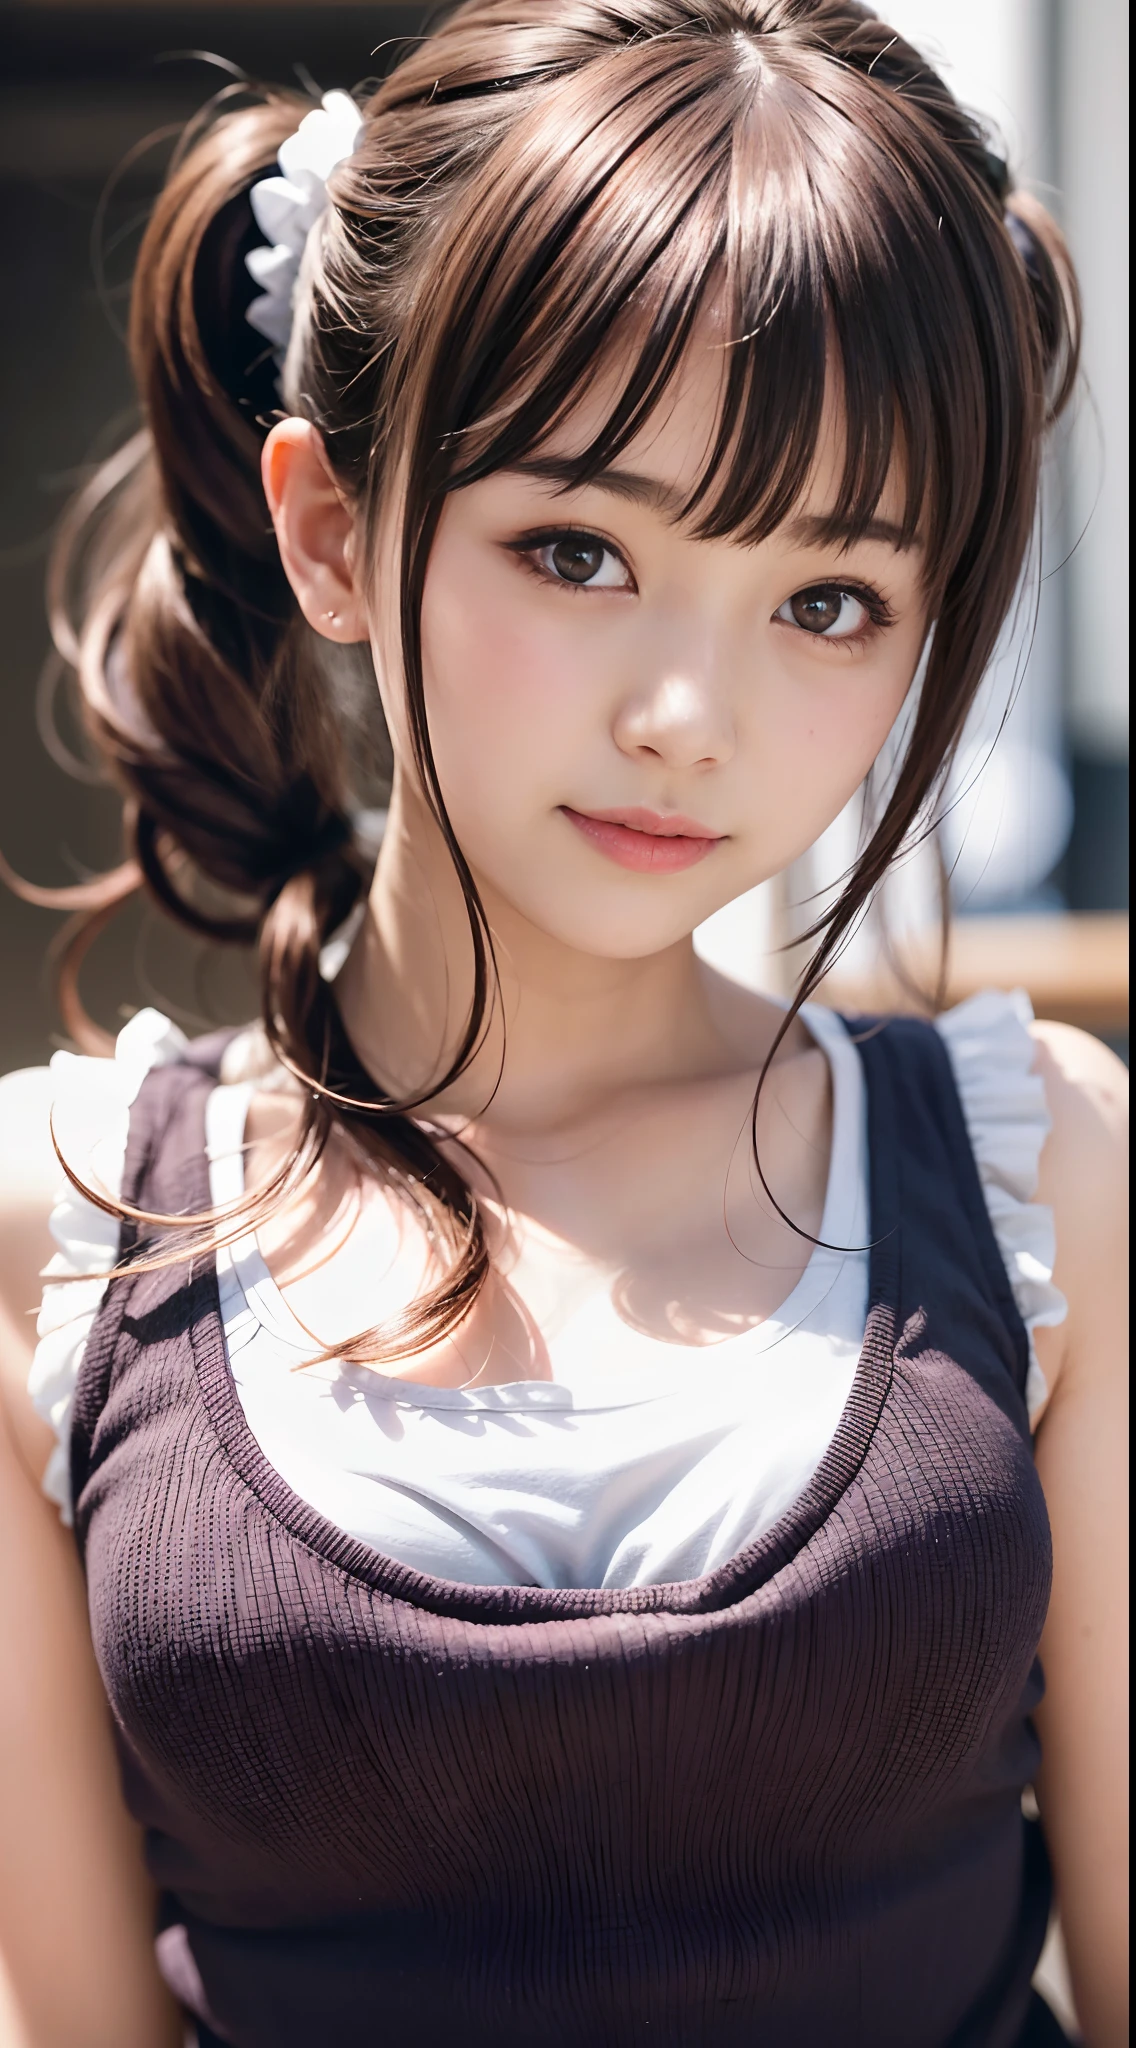 Adorable Japanese Girl 16yo Seaart Ai